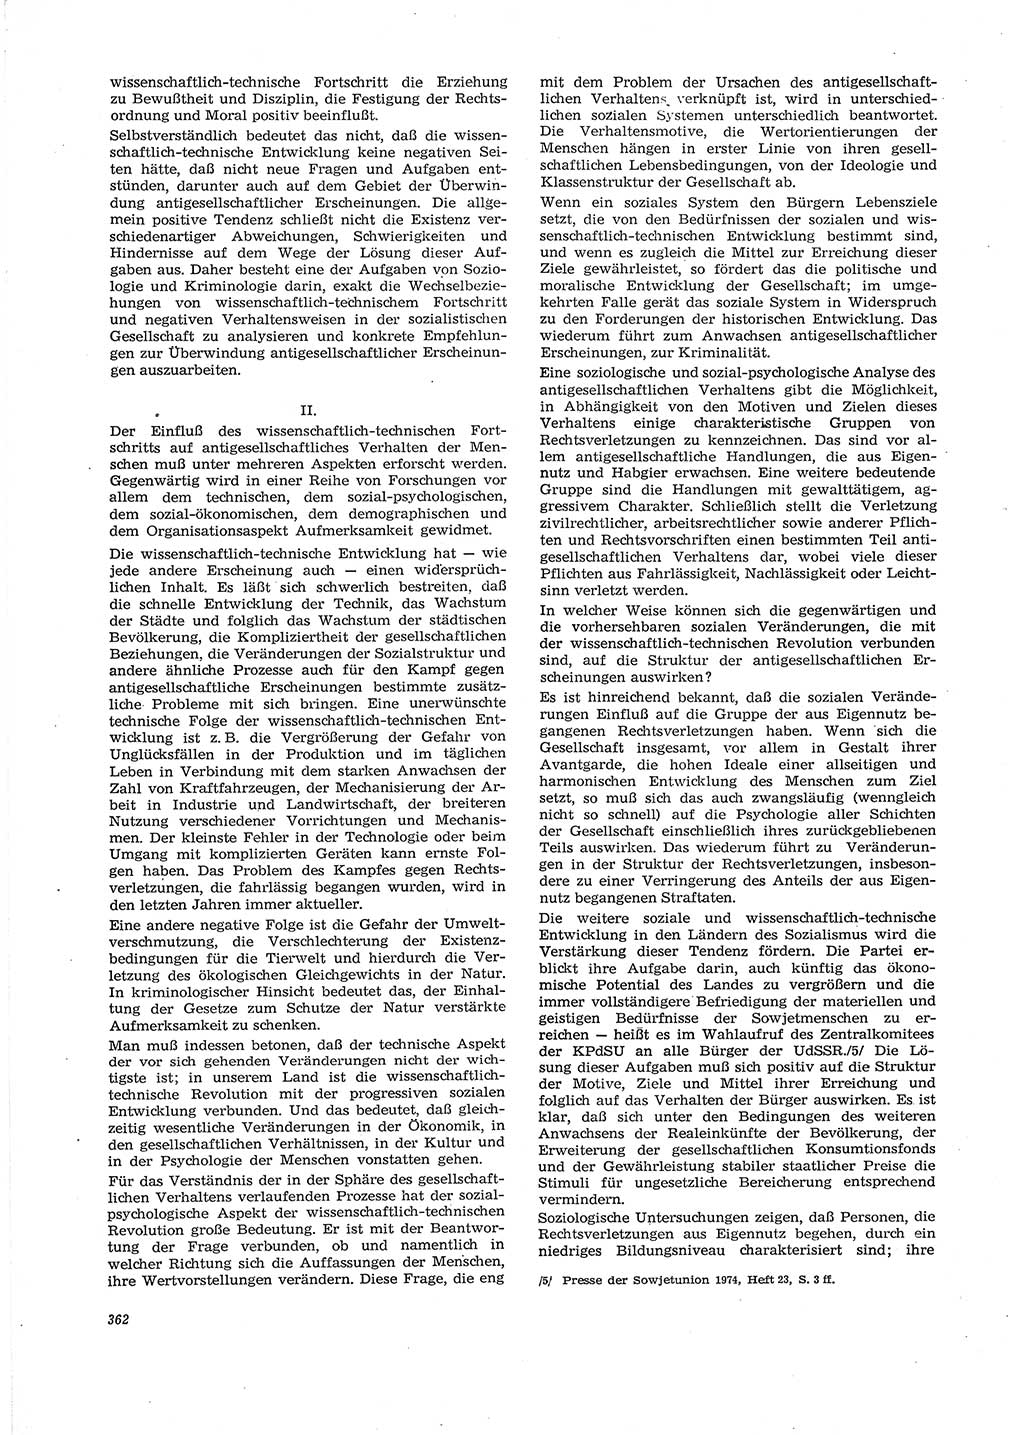 Neue Justiz (NJ), Zeitschrift für Recht und Rechtswissenschaft [Deutsche Demokratische Republik (DDR)], 29. Jahrgang 1975, Seite 362 (NJ DDR 1975, S. 362)